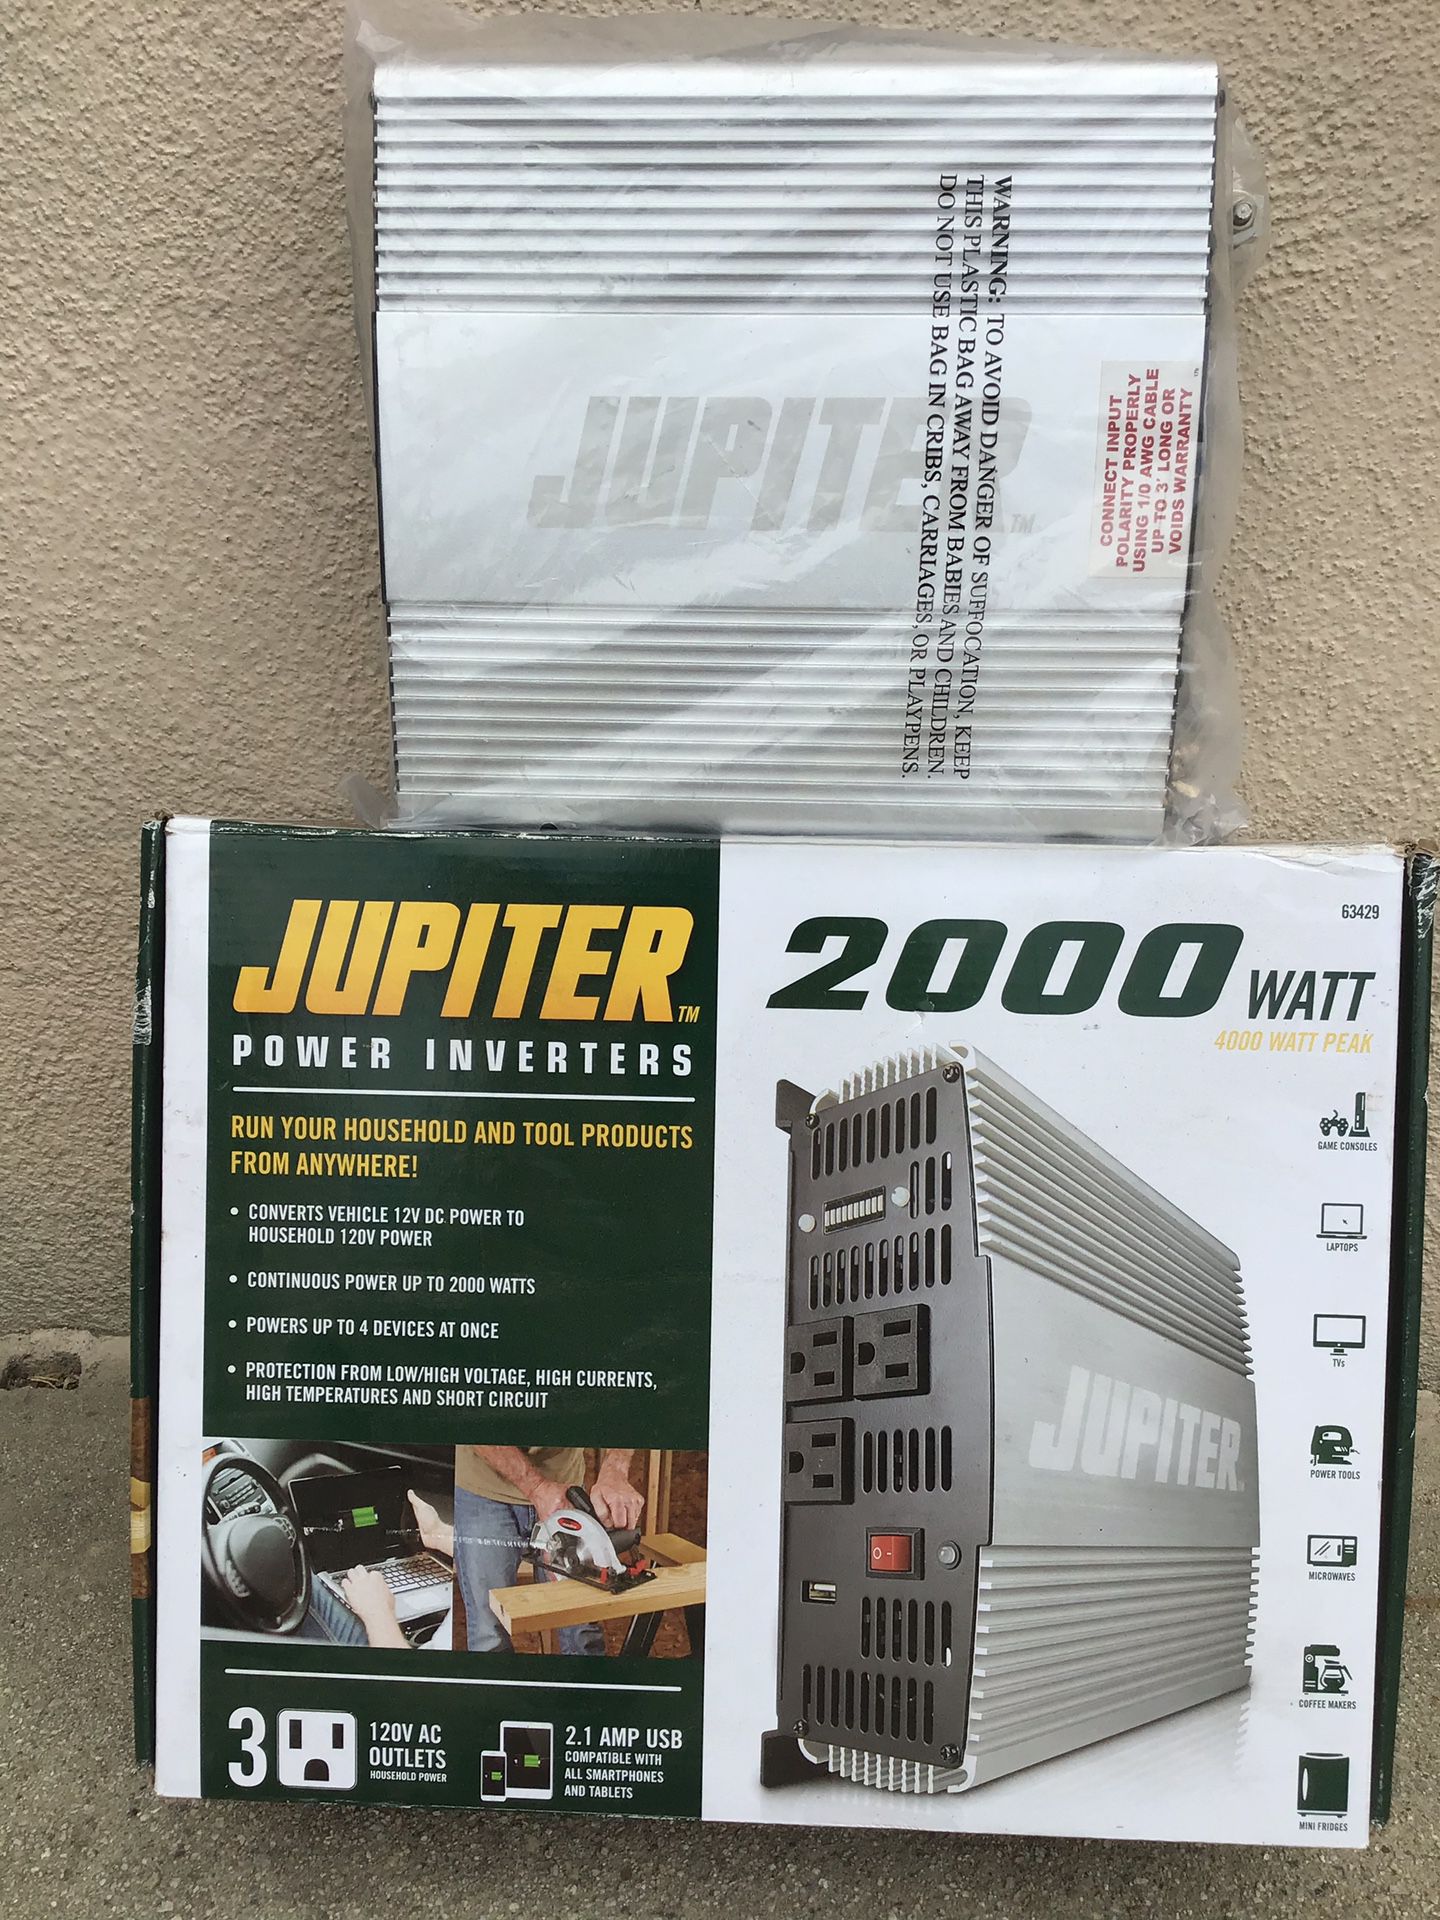 Jupiter power inverter 2000 Watt